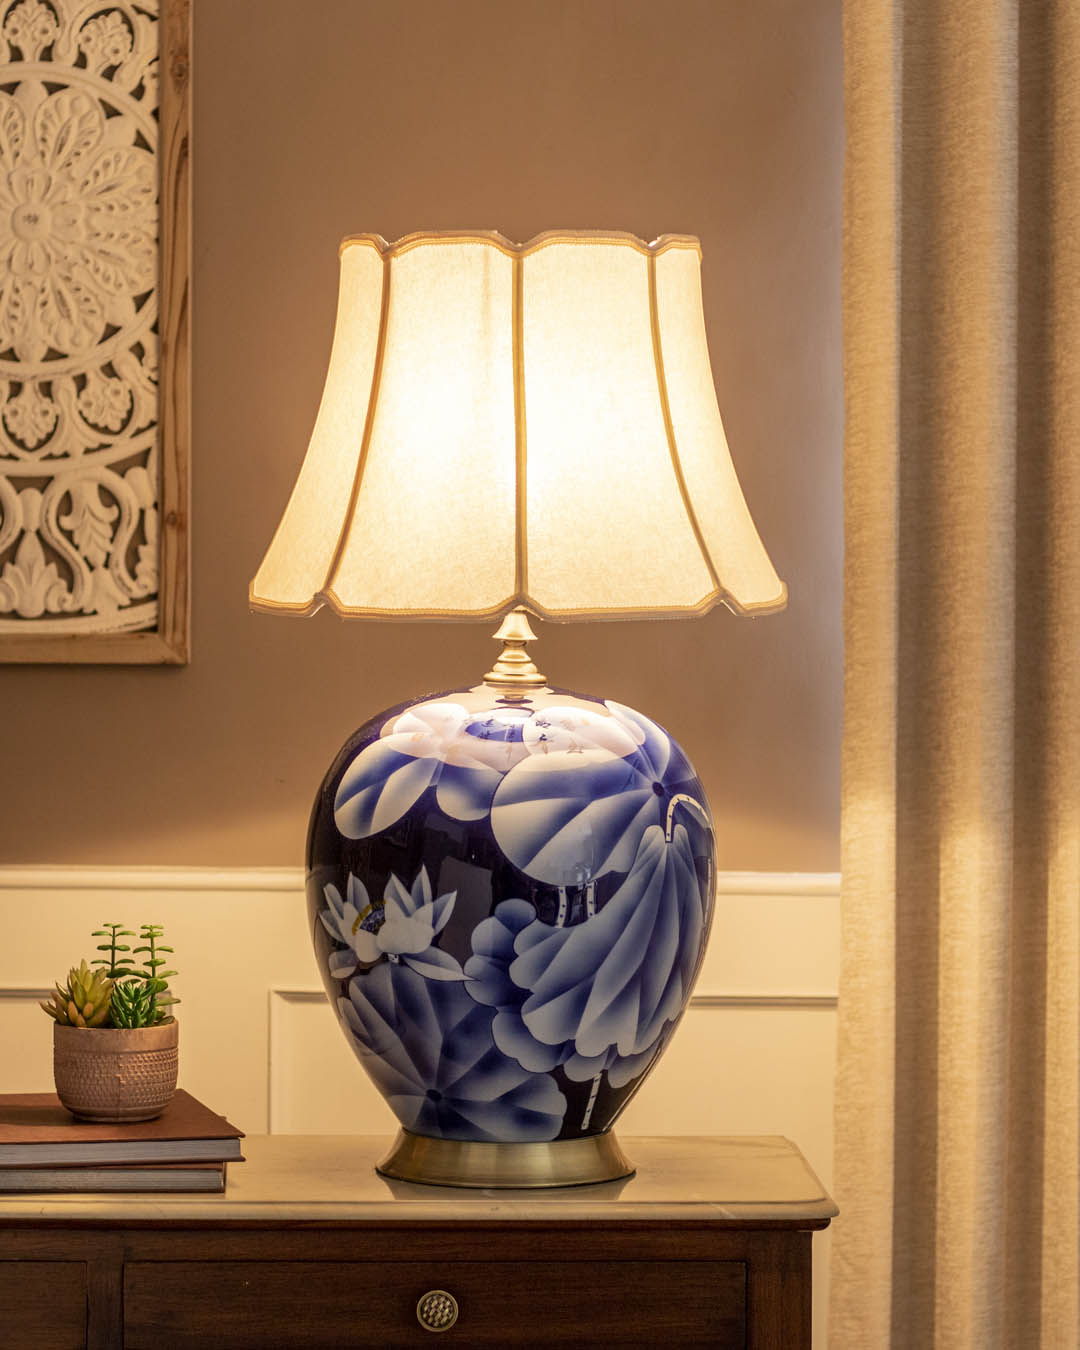 The Lotus Ceramic Table Lamp